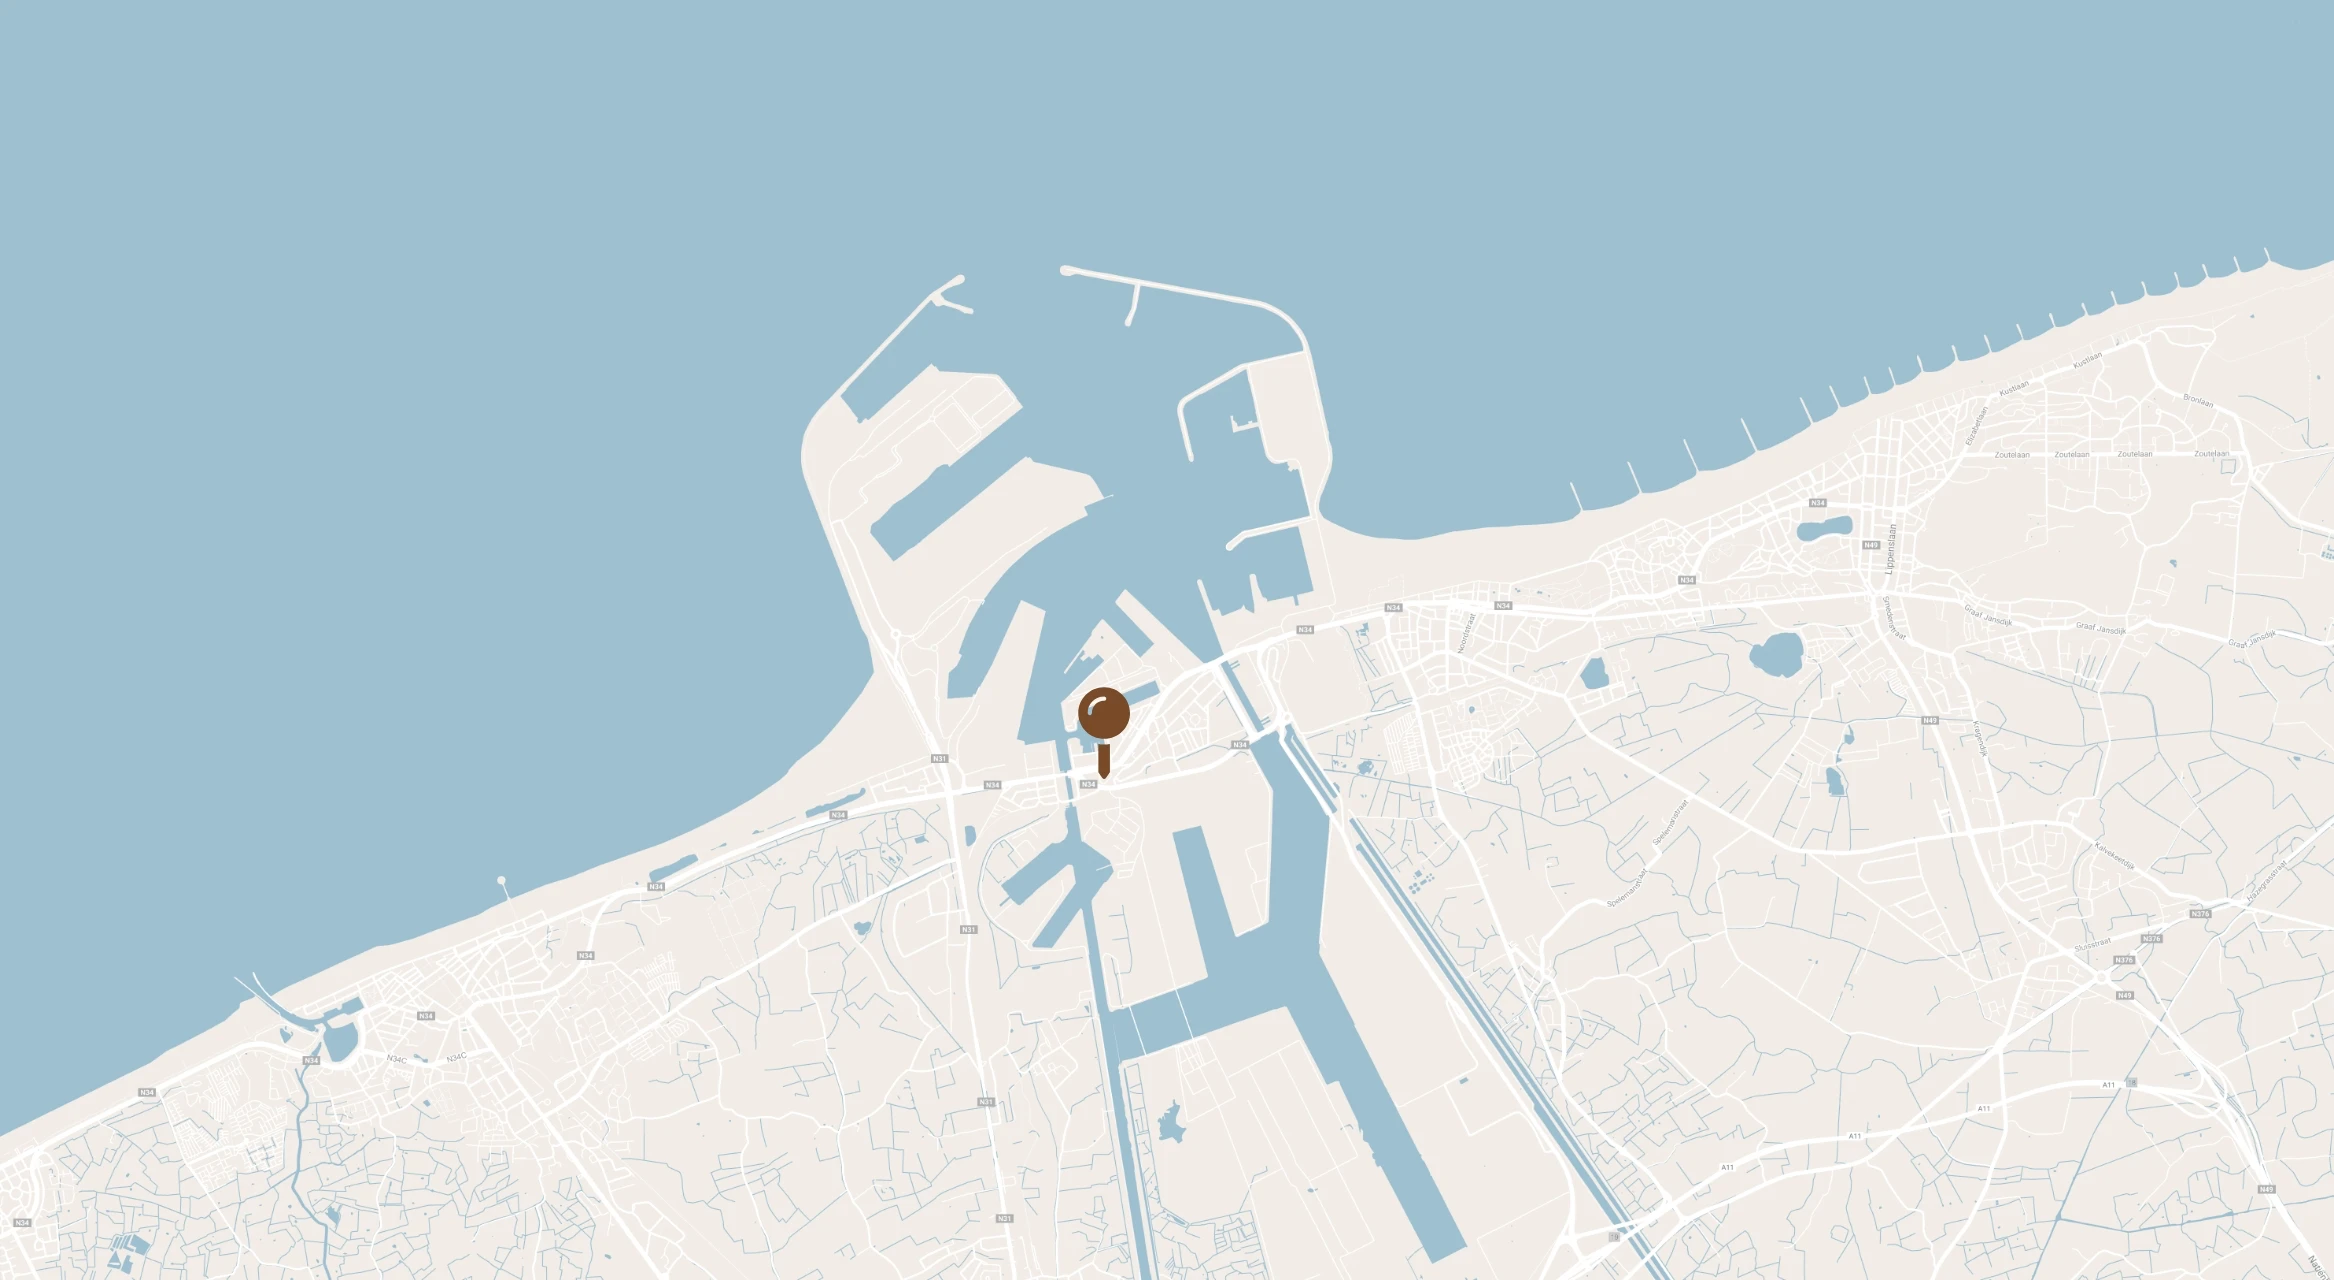 Ontdek de maritieme omgeving van Zeebrugge. Niet enkel ideaal voor teambuildings, maar ook bedrijfsevenementen en meetings!